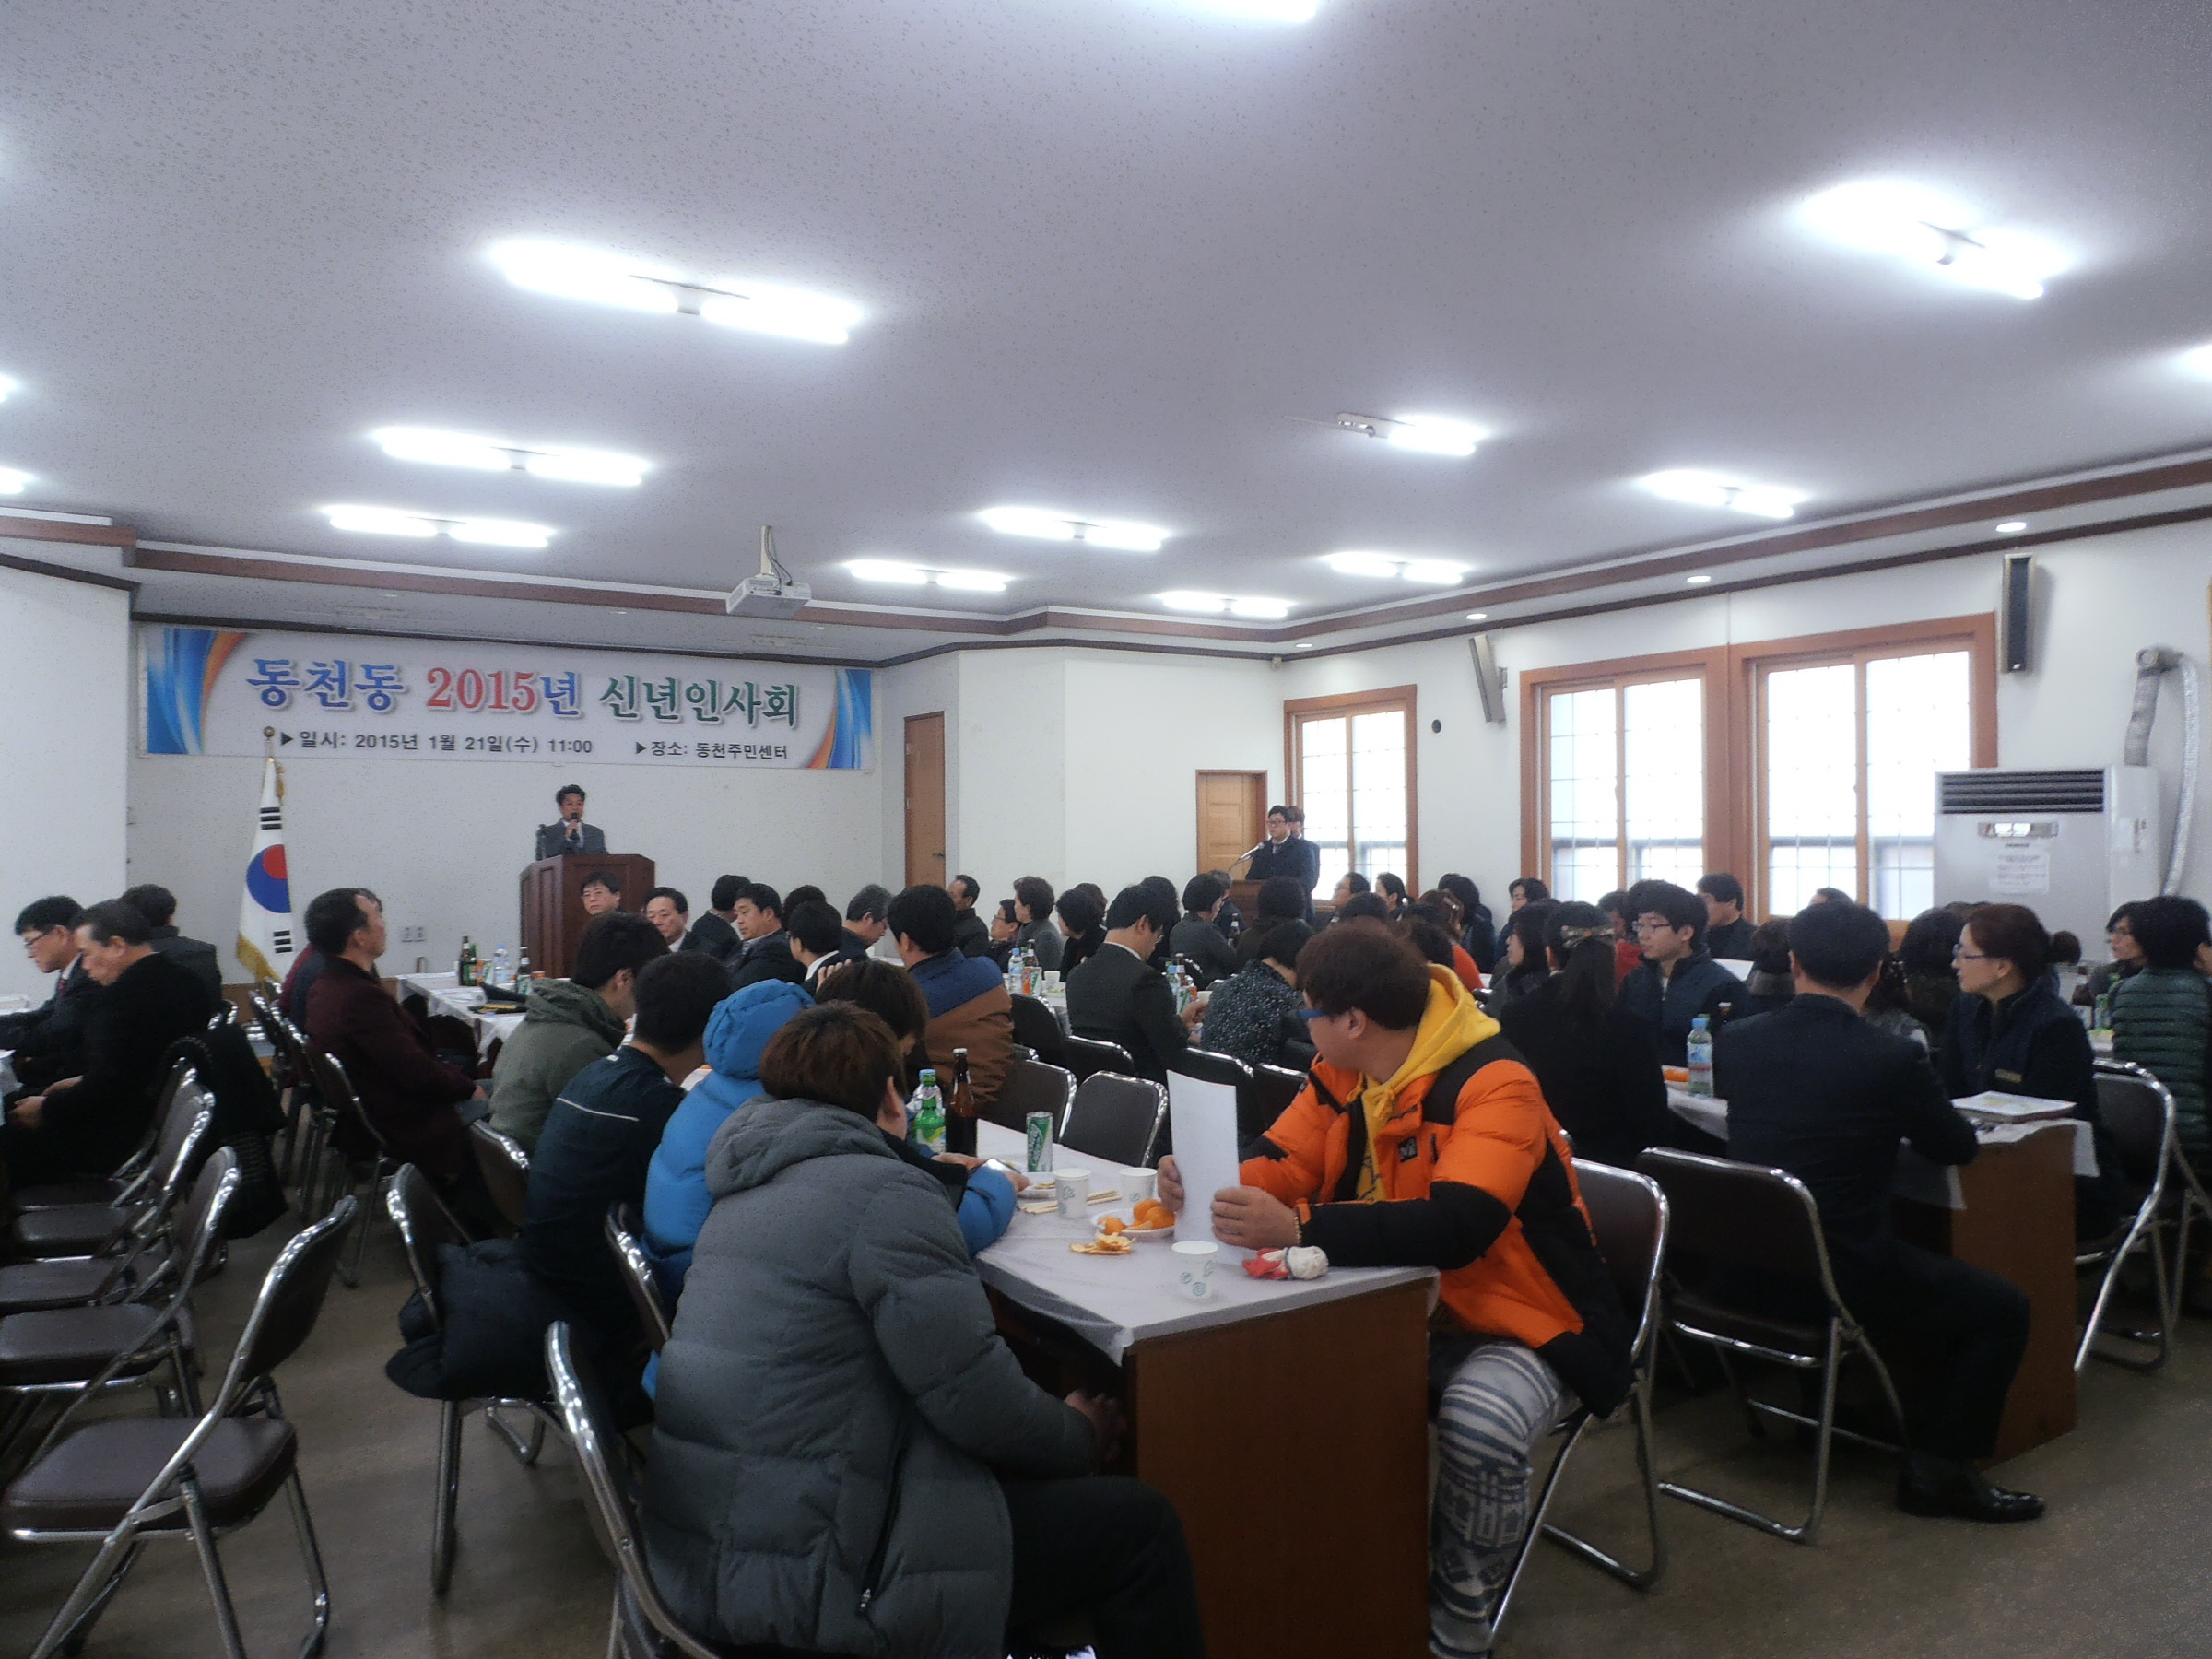 동천동‘2015년 신년인사회’개최 